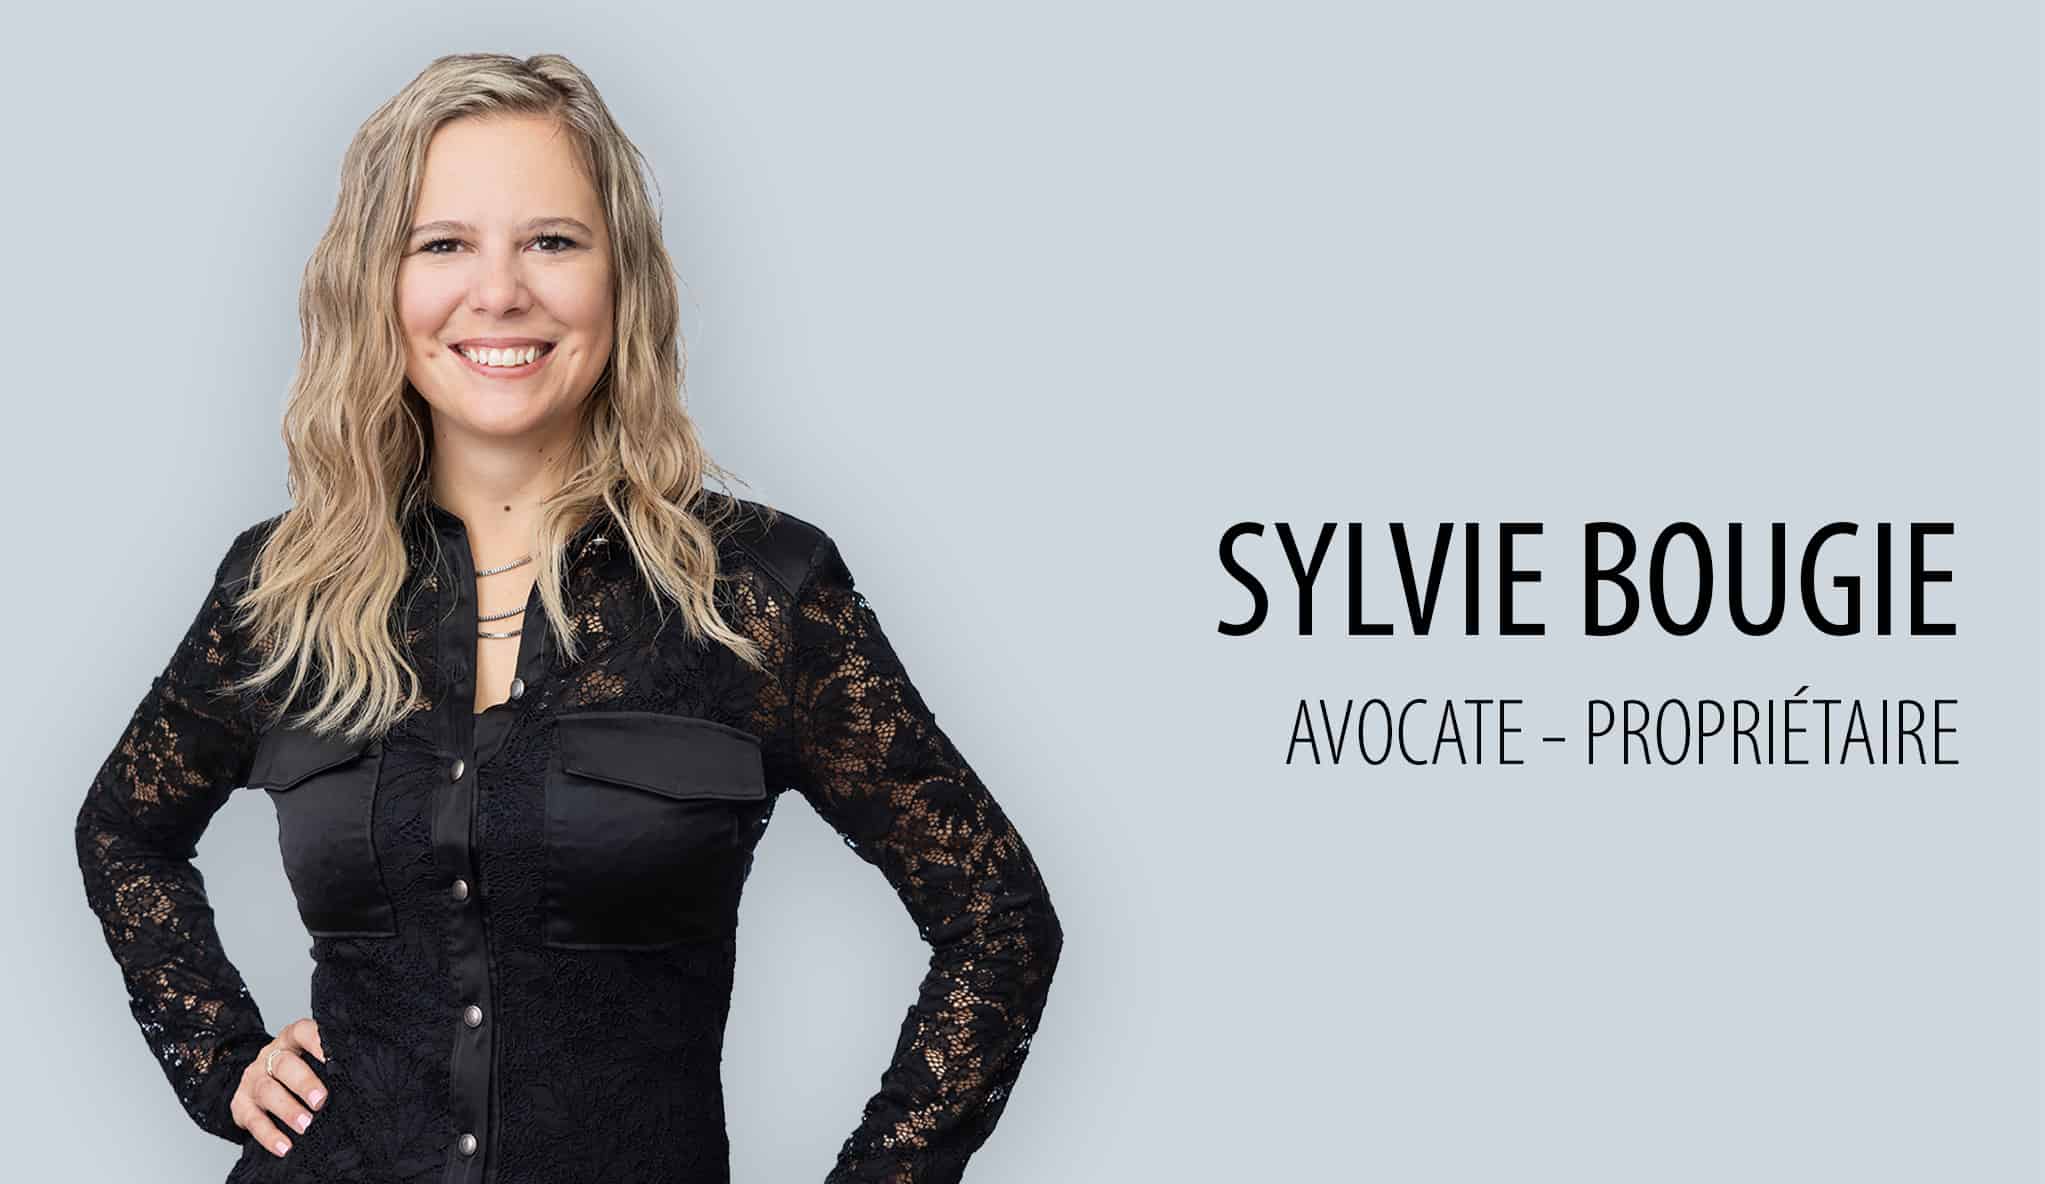 Sylvie Bougie, Avocate-Propriétaire